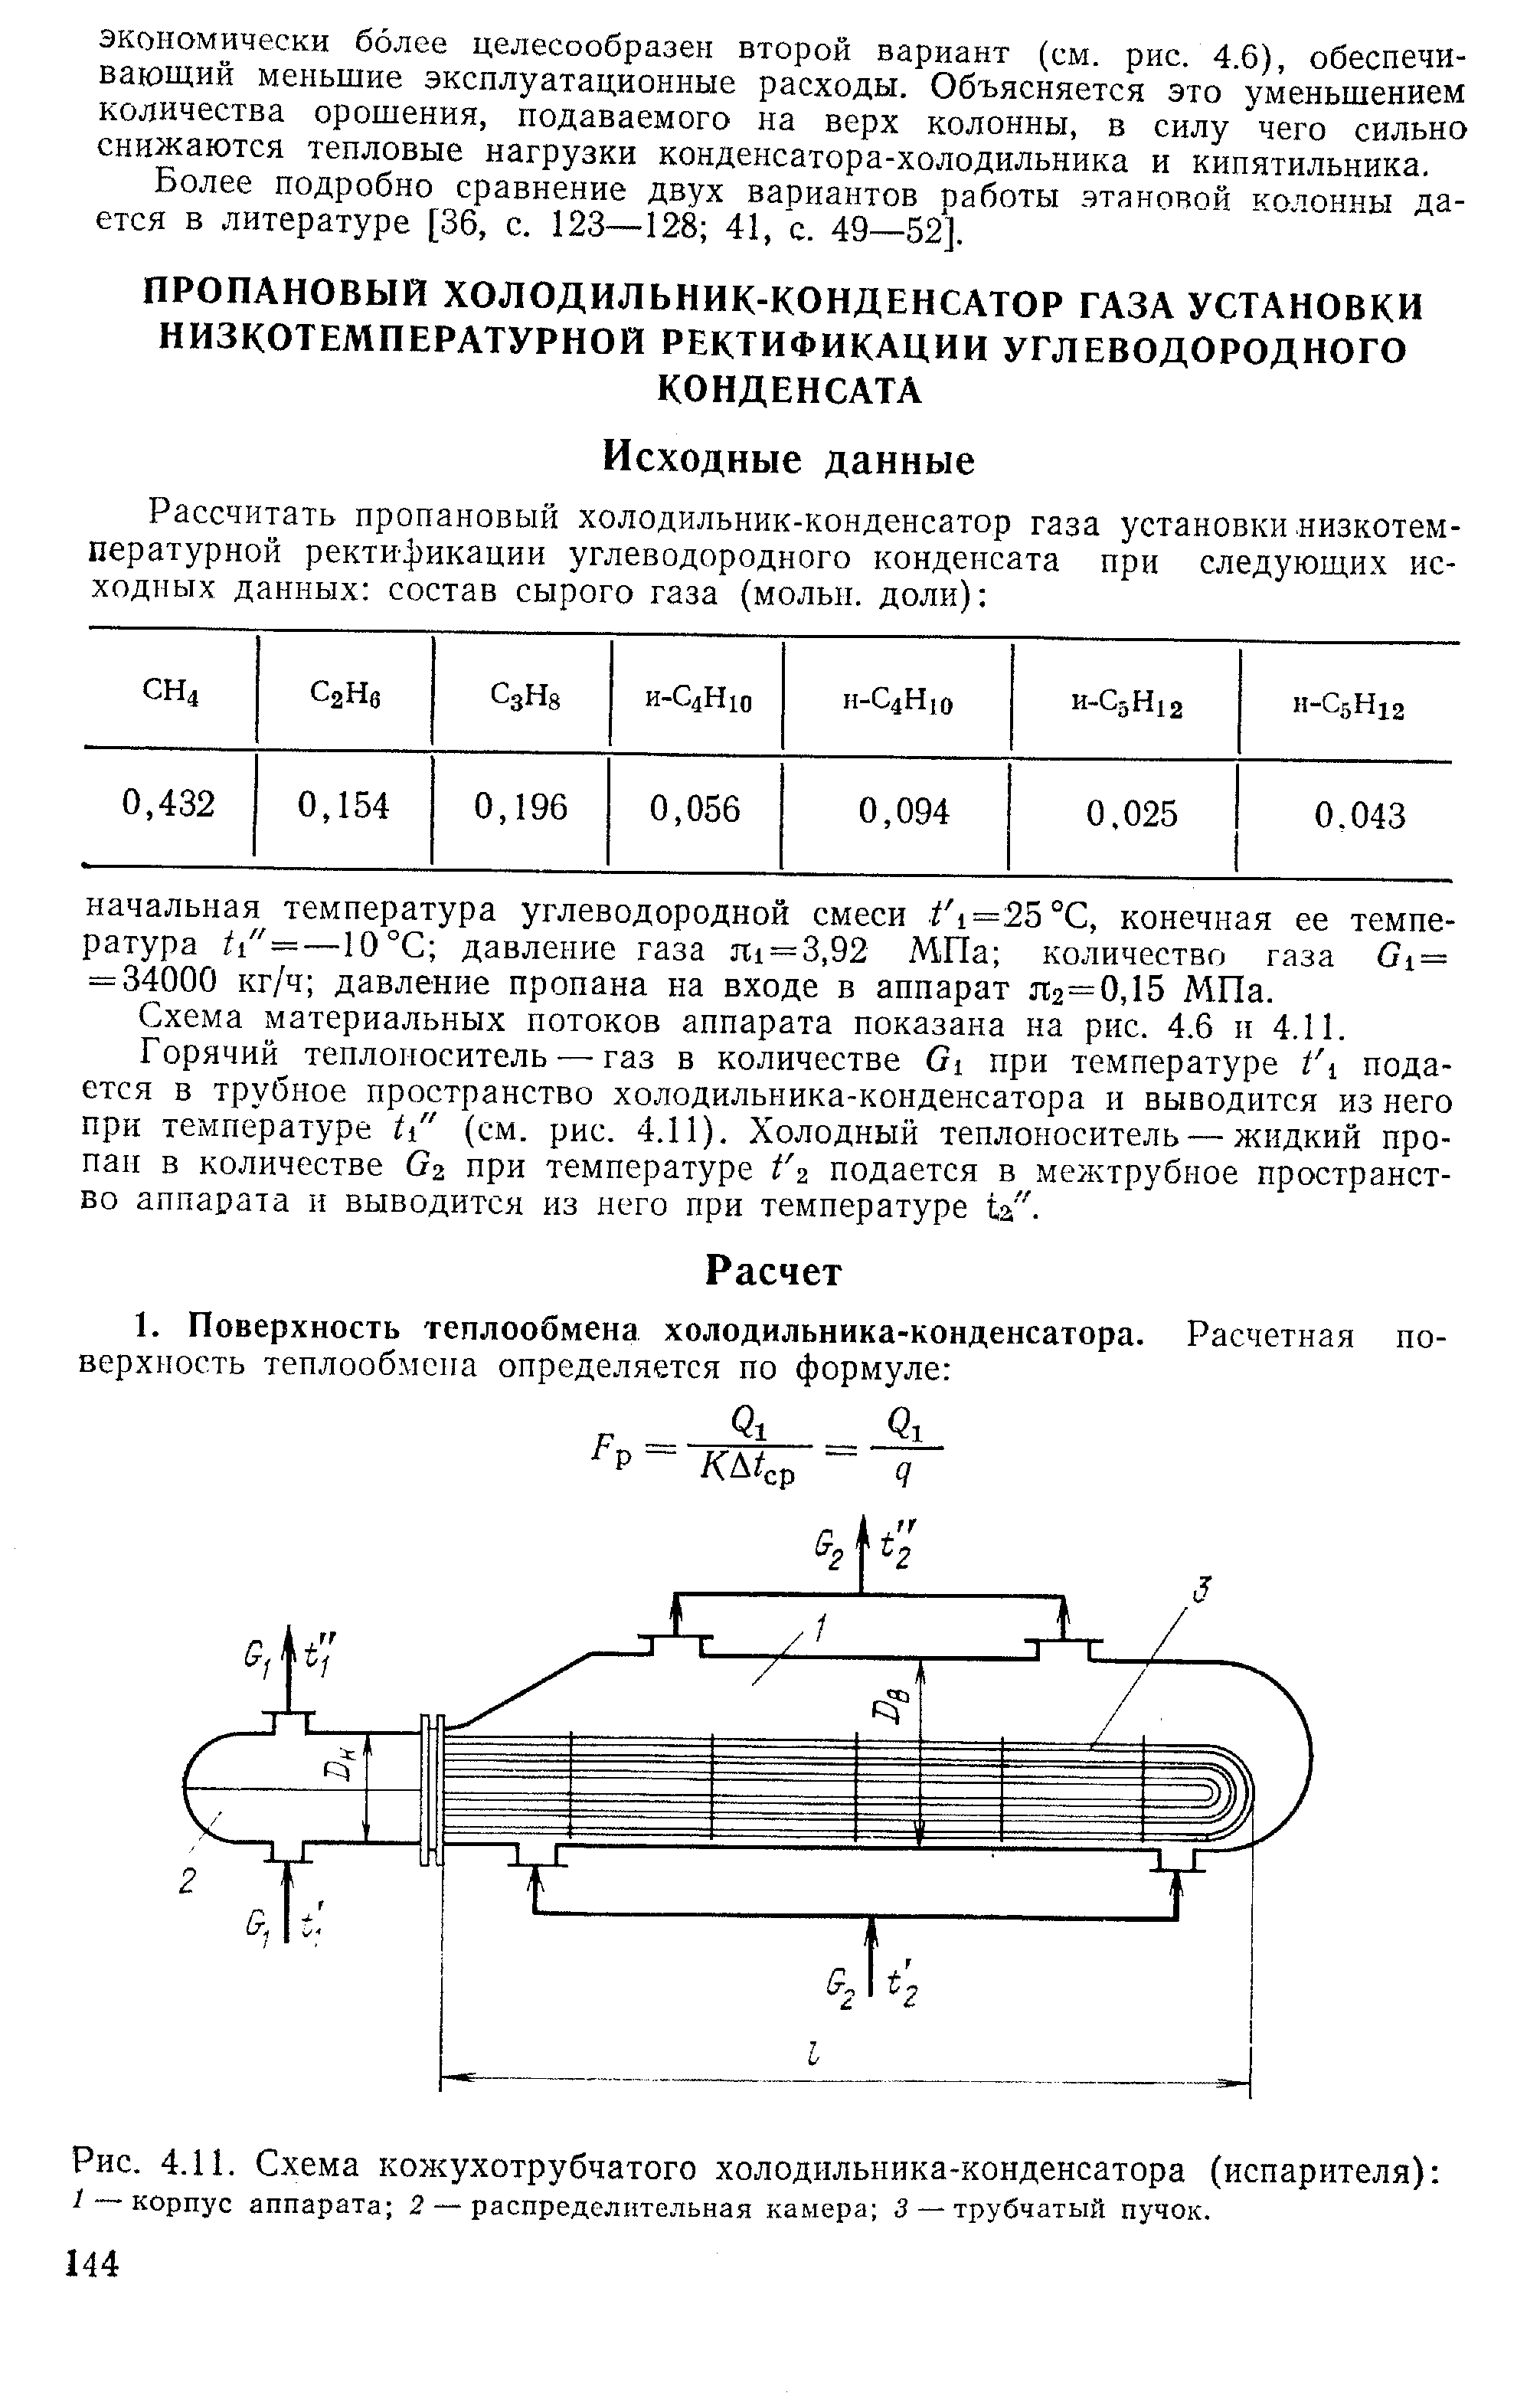 Схема материальных потоков аппарата показана на рнс. 4.6 и 4.11.